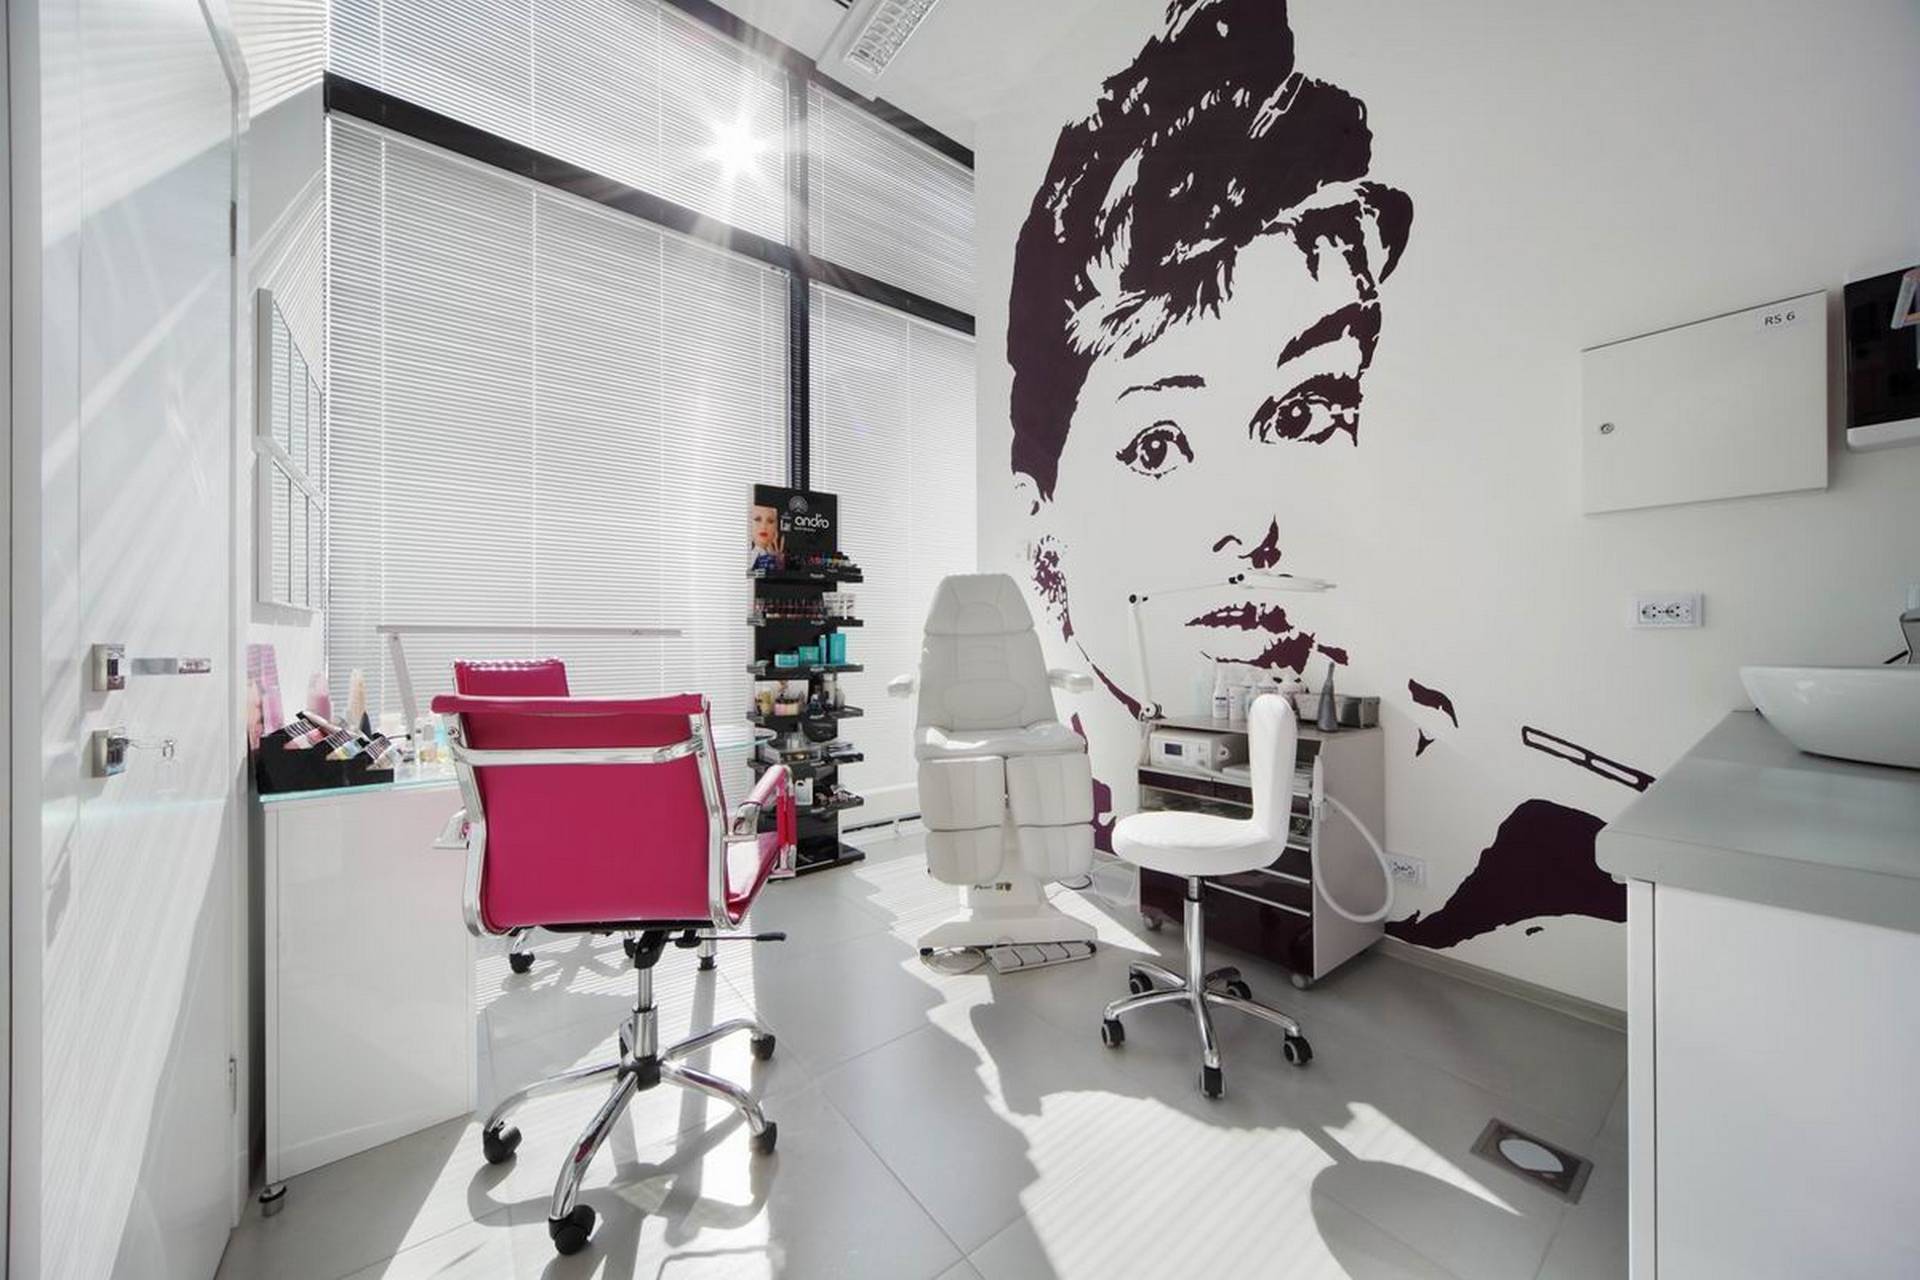 15 Salon de belleza moderno pintado de blanco con grafiti en la pared (puede ser Audrey Hepburn)